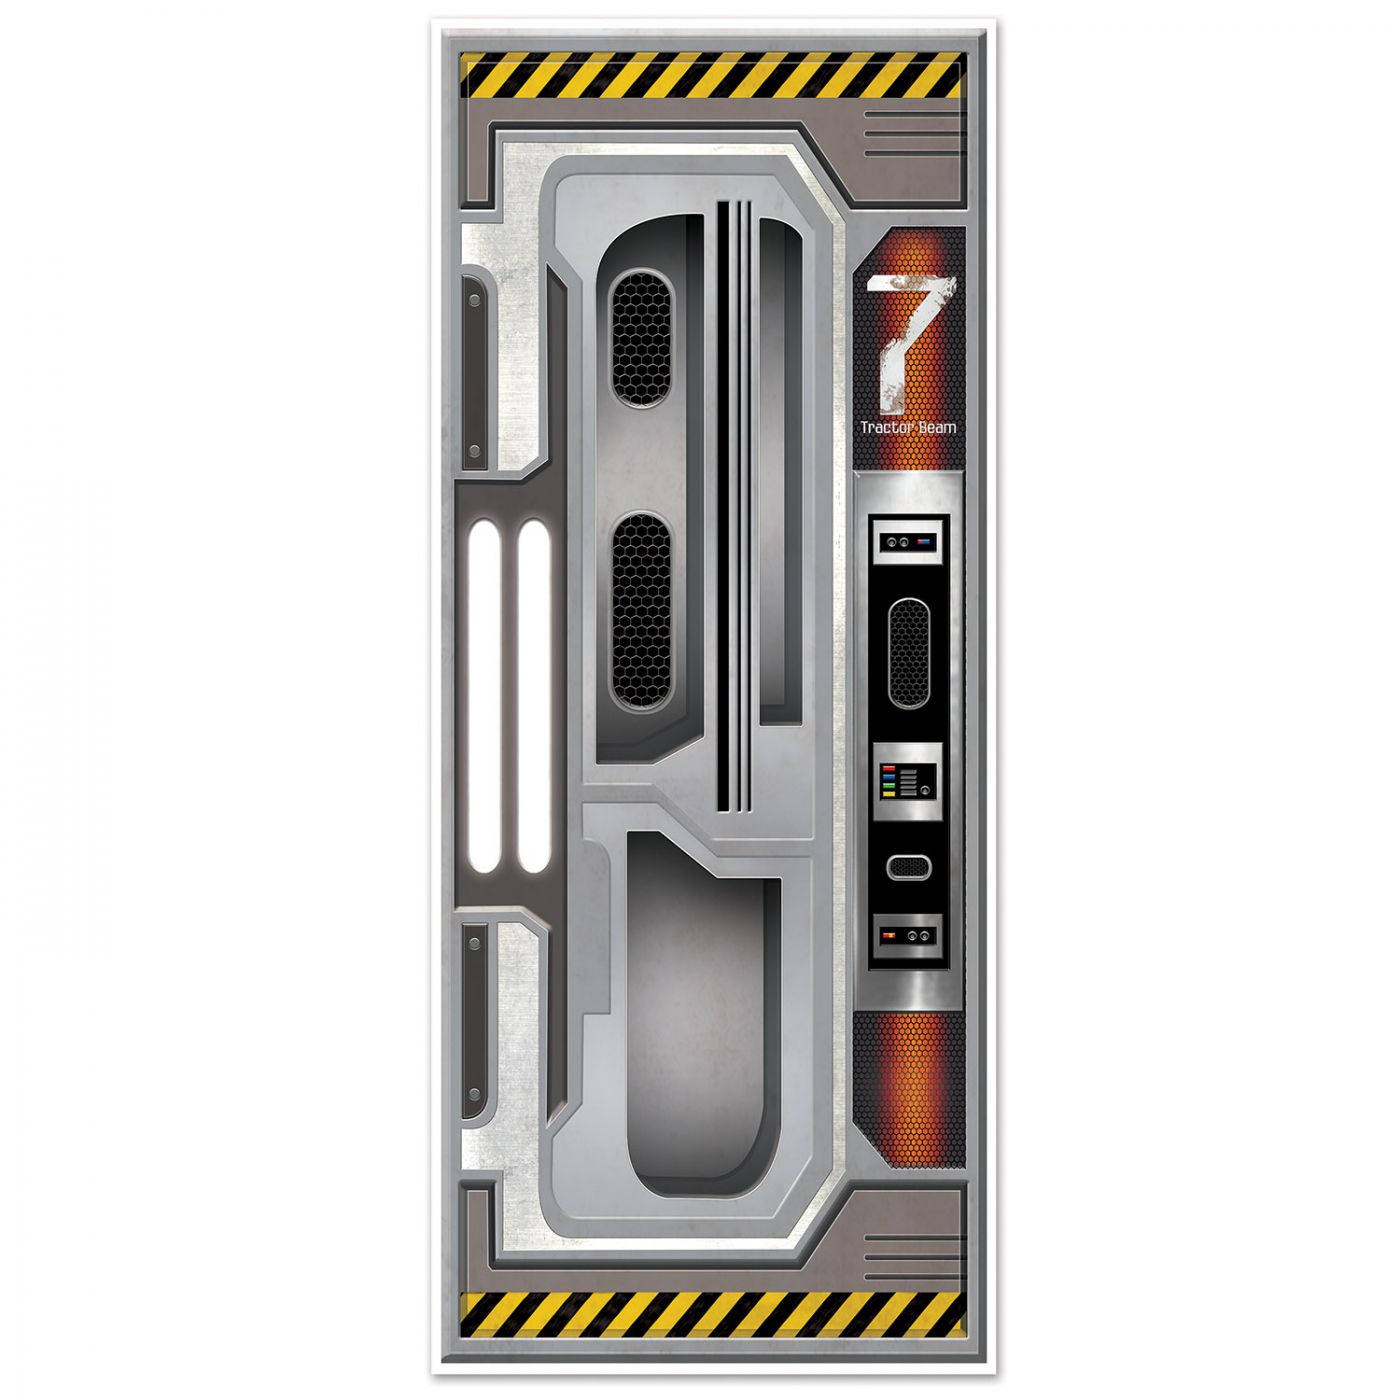 Spaceship Door Cover image